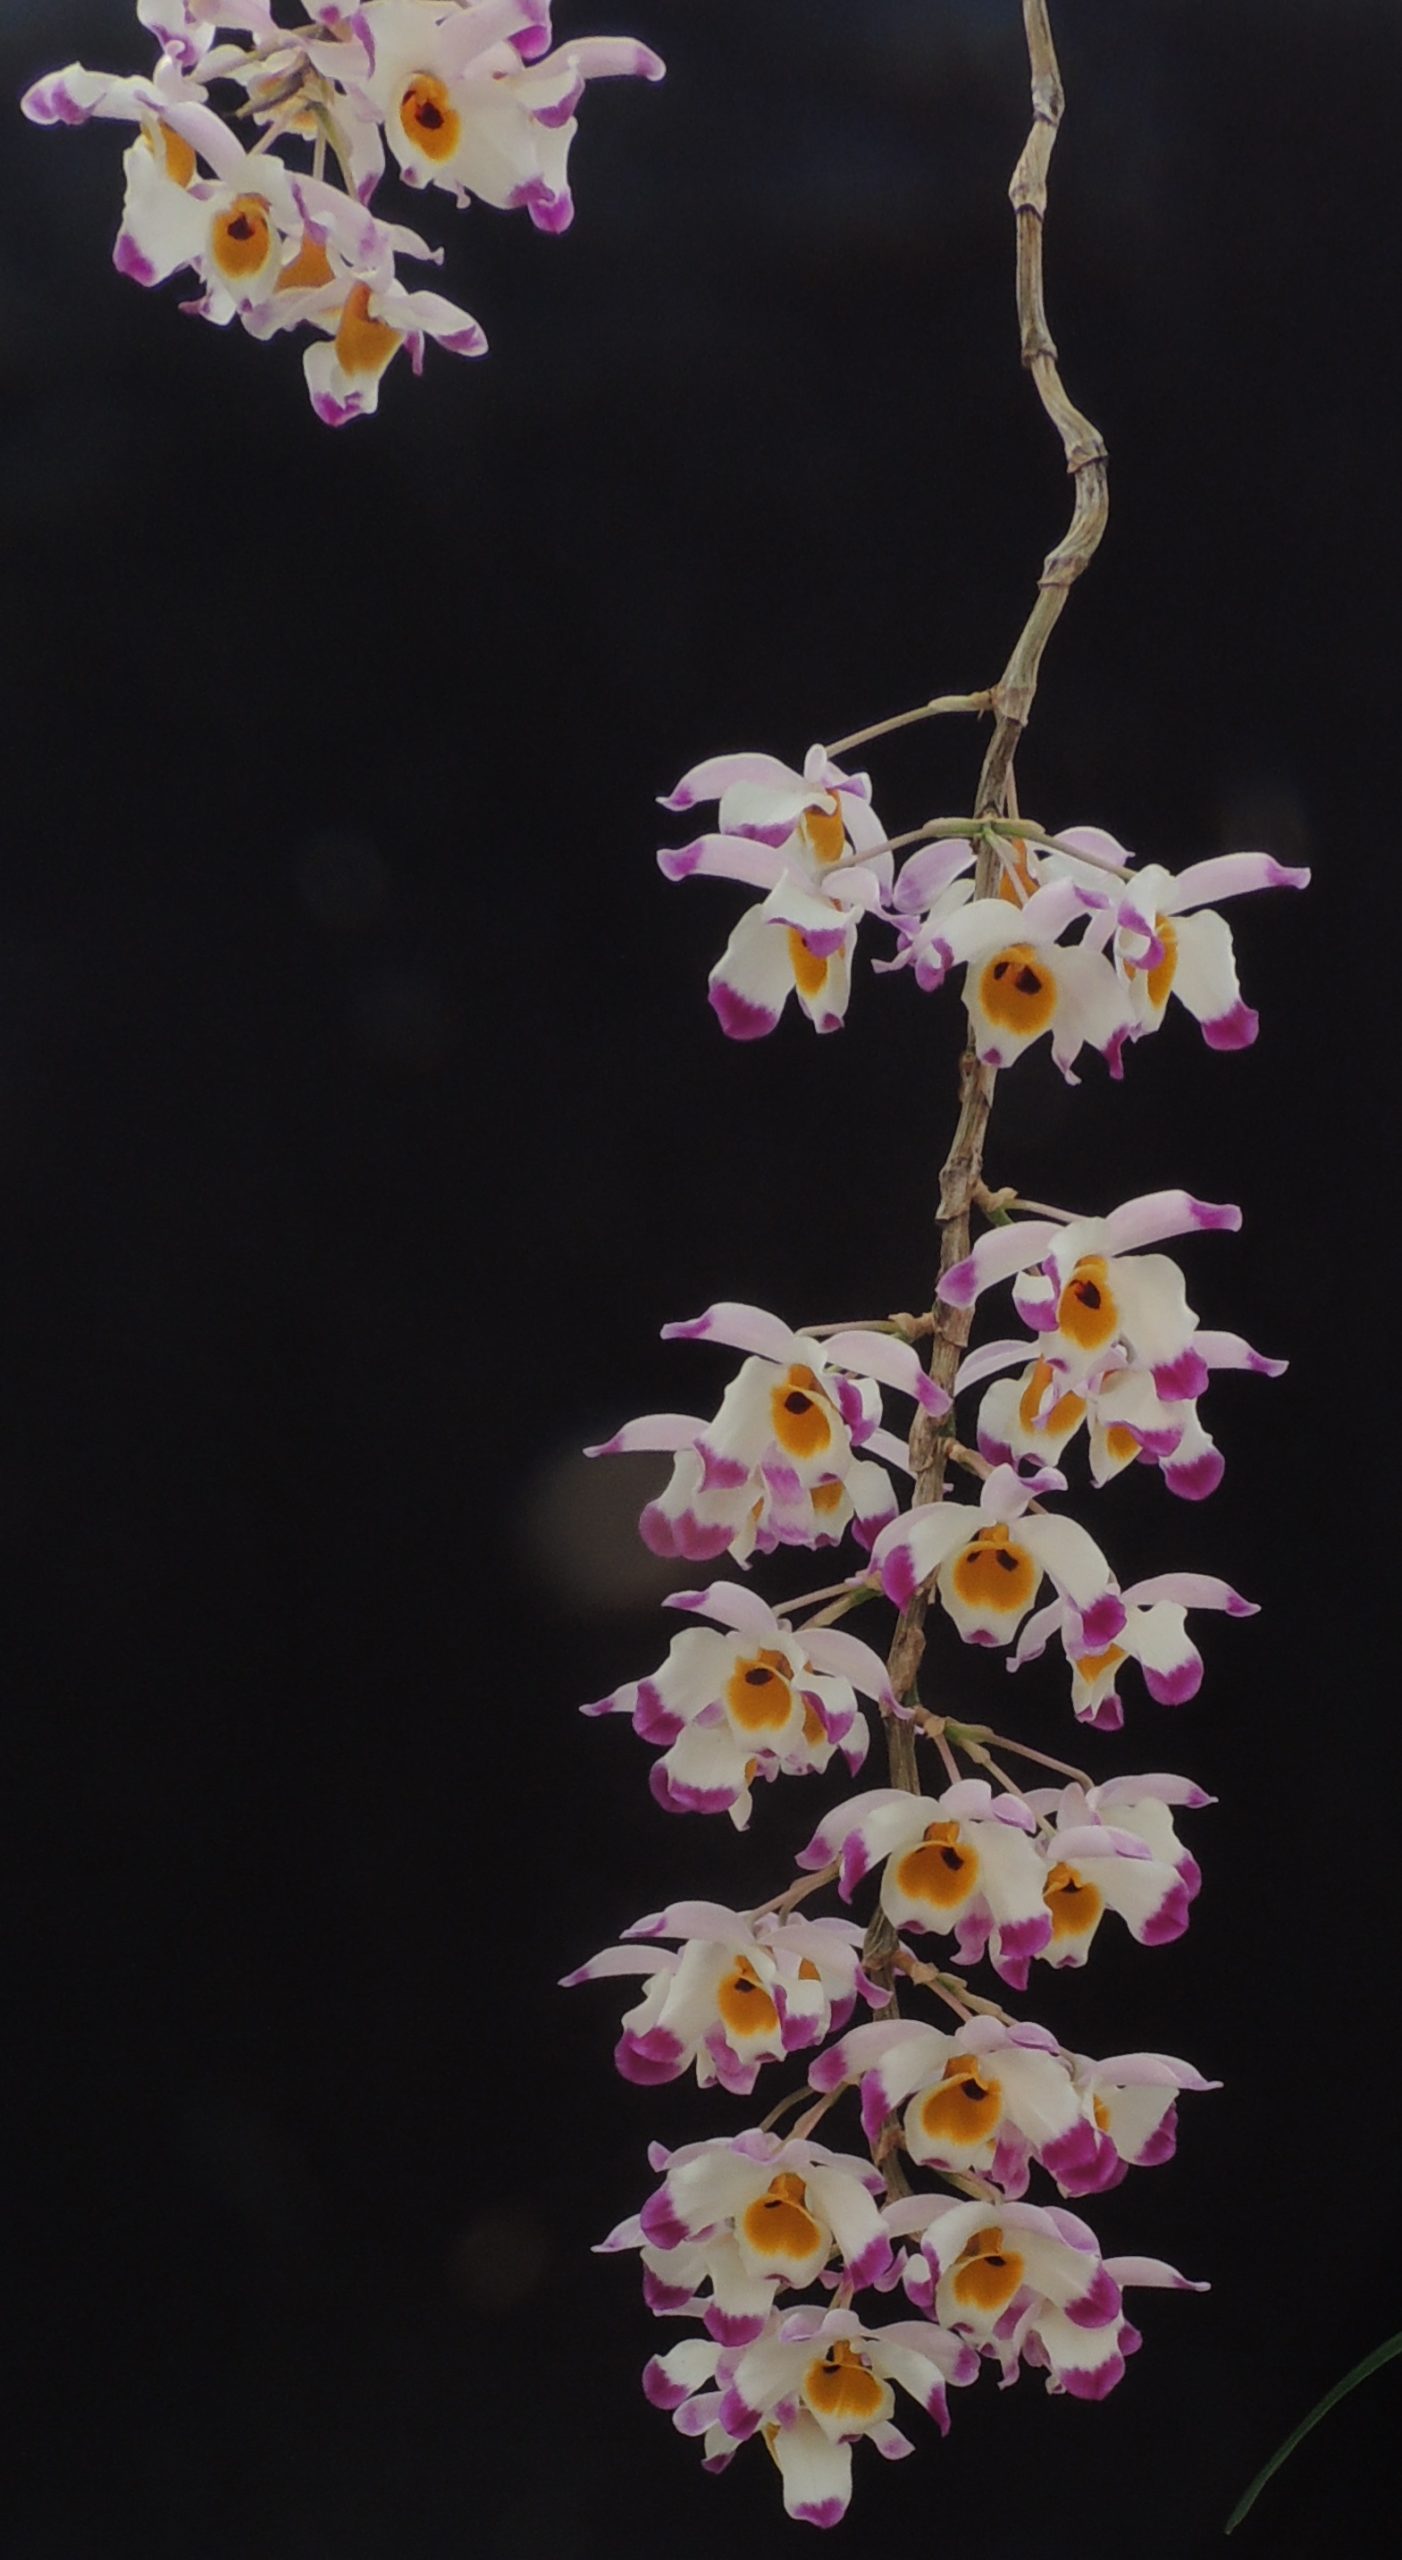 Tổng hợp hình ảnh hoa lan U Lồi – Hoàng thảo U lồi đẹp nhất - [Kích thước hình ảnh: 1402x2560 px]